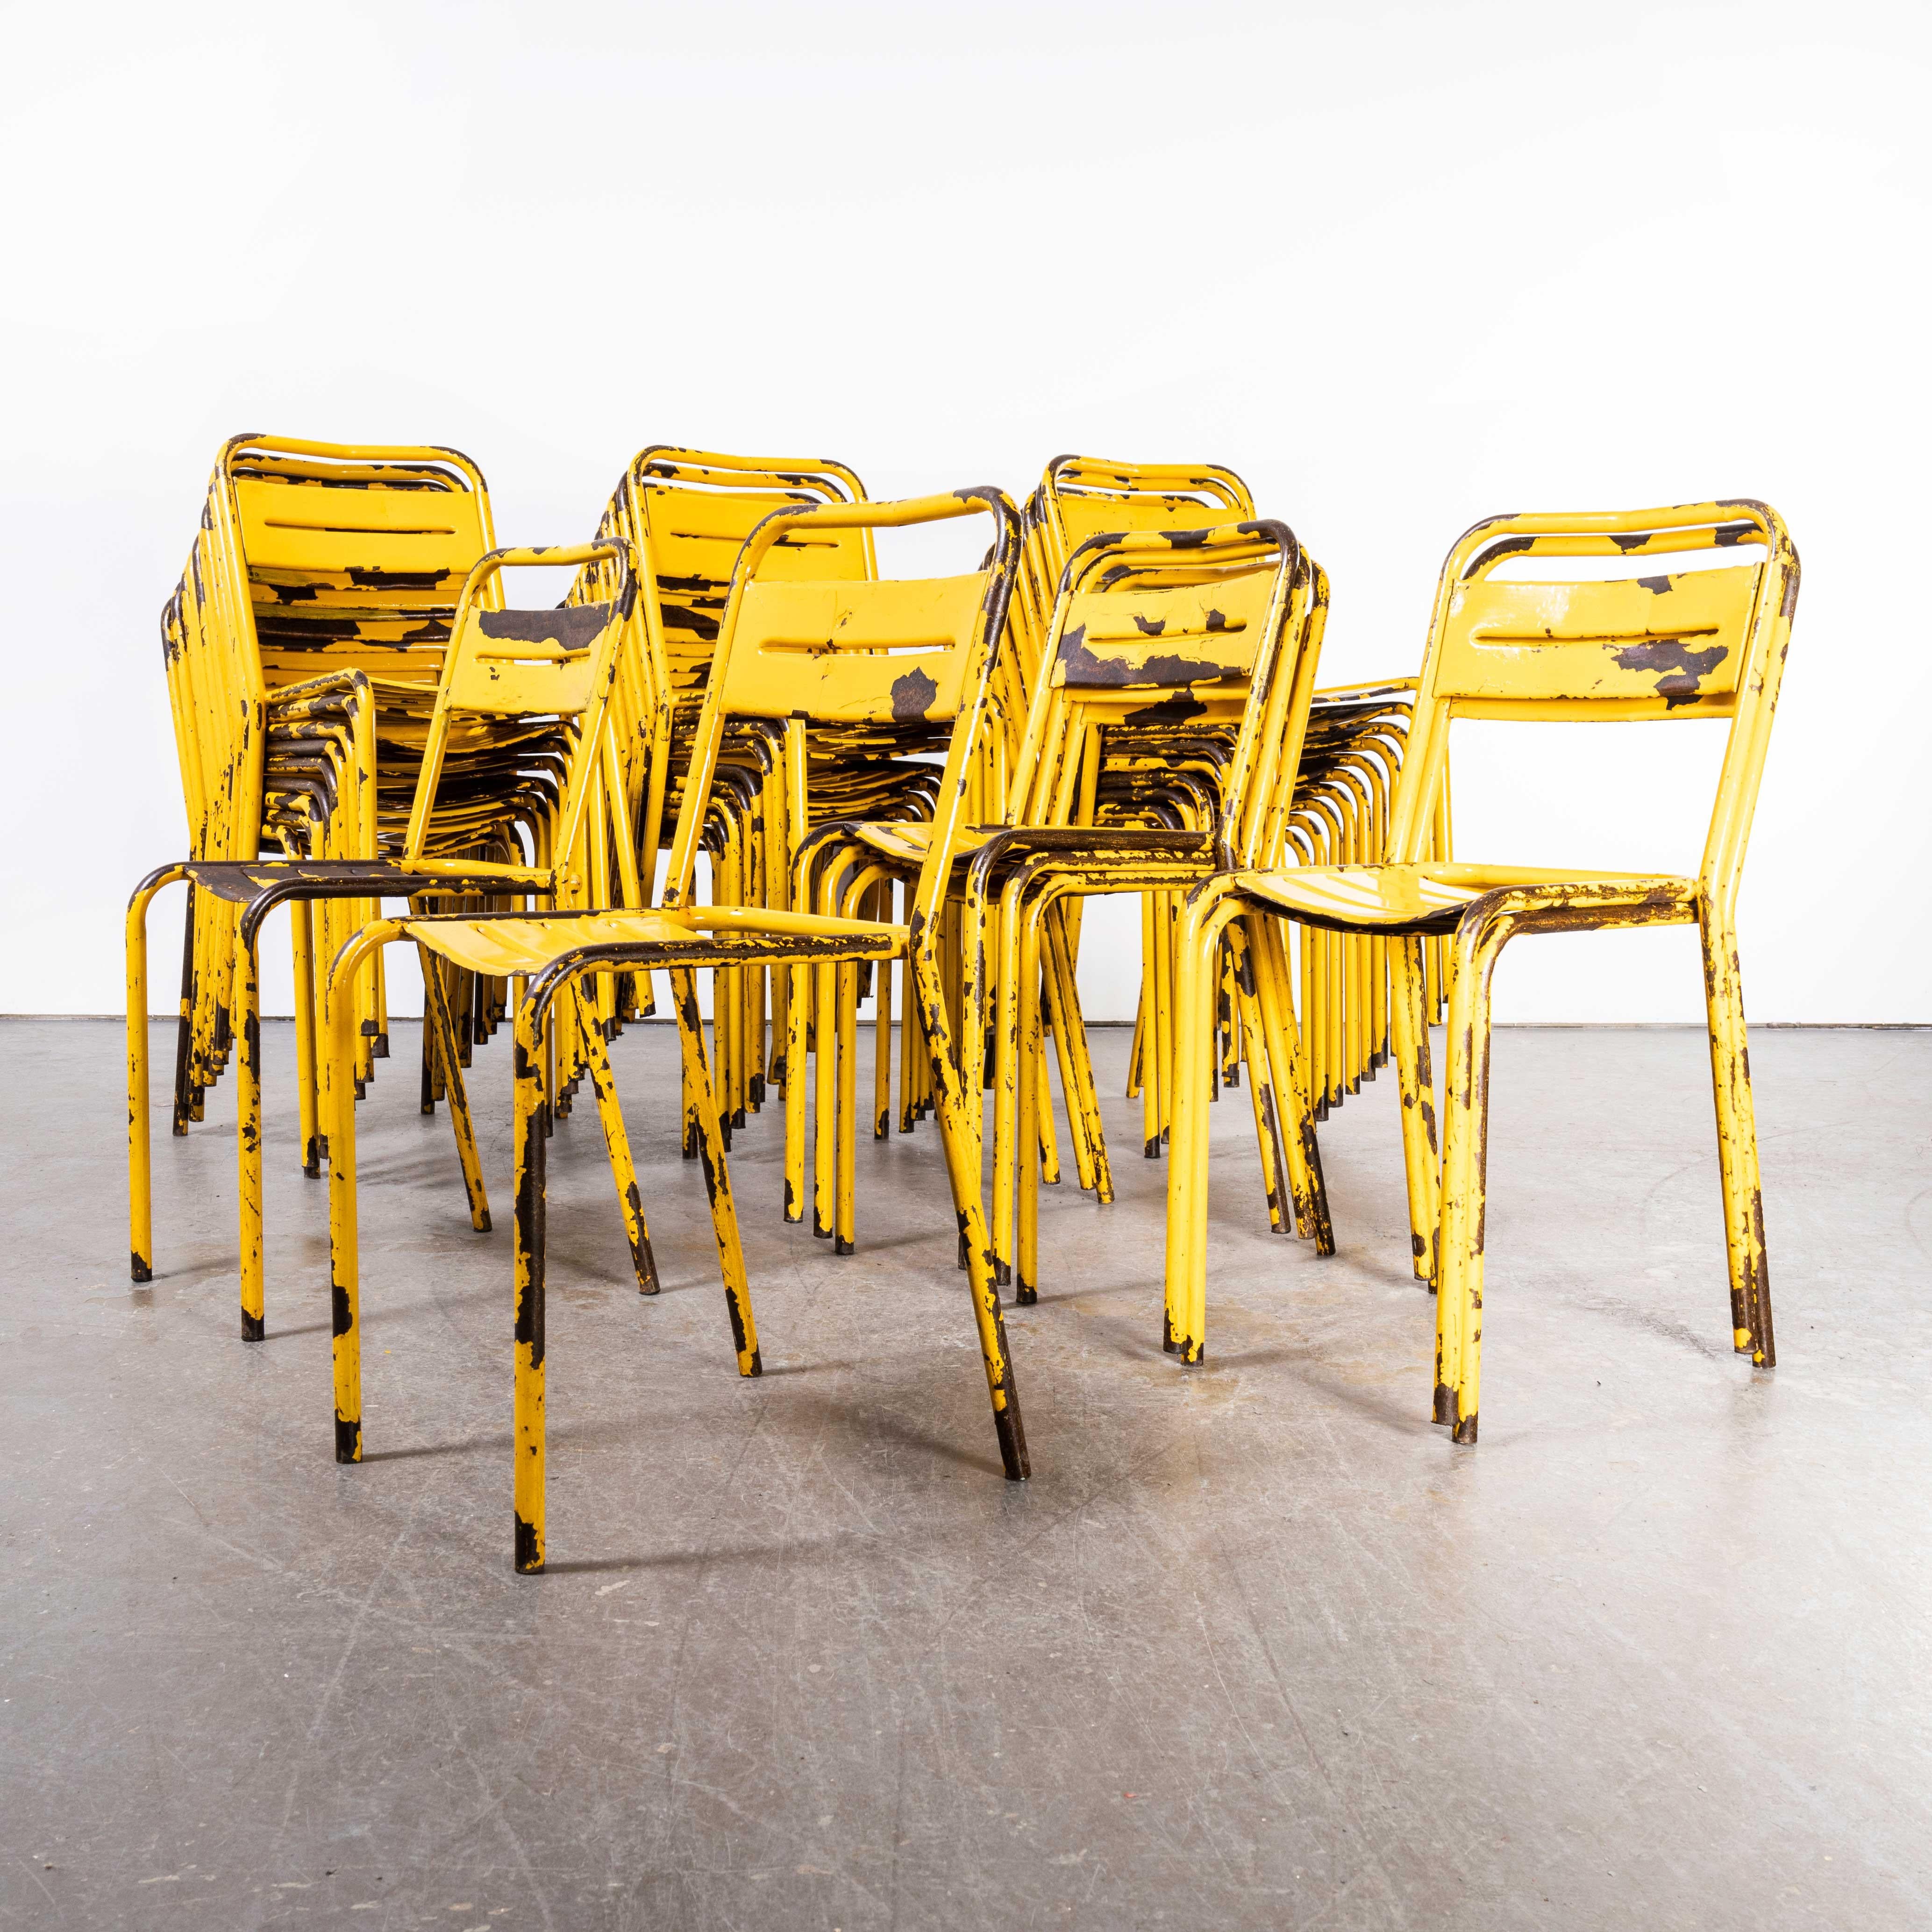 chaises d'extérieur en métal jaune des années 1950 - bonnes quantités disponibles
chaises d'extérieur en métal jaune des années 1950 - bonnes quantités disponibles. Similaires à celles de Tolix mais non fabriquées par Tolix, ces chaises ont été